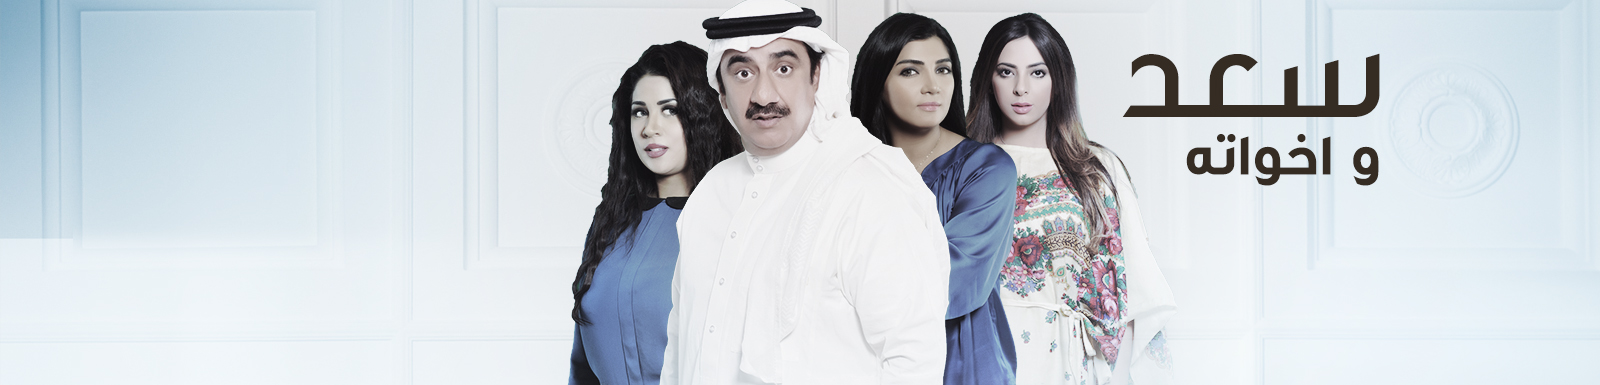 يوتيوب مشاهدة مسلسل سعد و أخواته الحلقة 2 الثانية 2015 كاملة